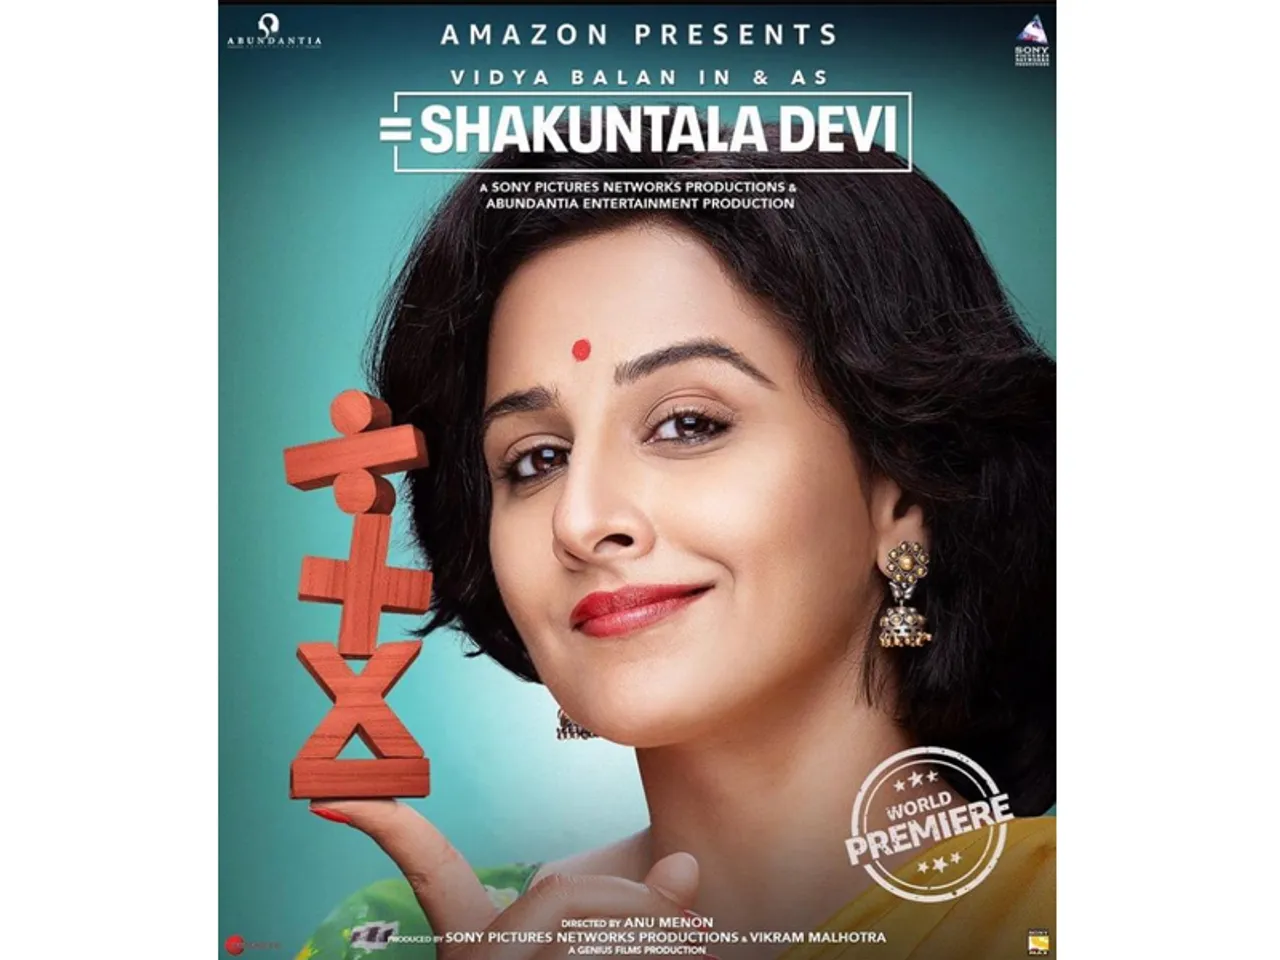 'गुलाबो सिताबो' के बाद विद्या बालन की फिल्म 'शकुंतला देवी' अमेजॉन प्राइम वीडियो पर होगी रिलीज